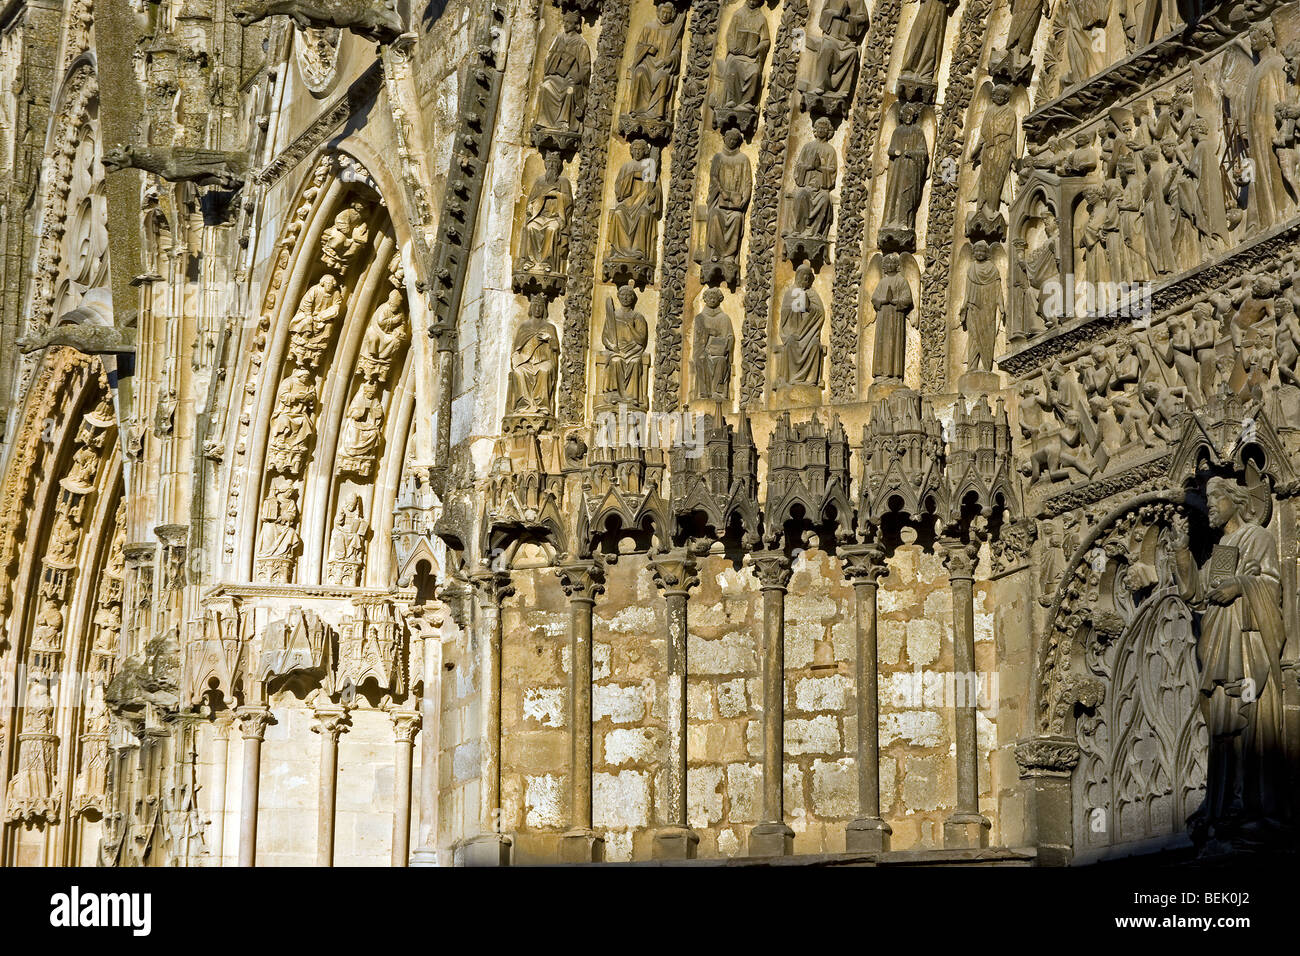 Dettaglio di ingresso della cattedrale di Bourges / Saint Etienne de Bourges, Francia Foto Stock